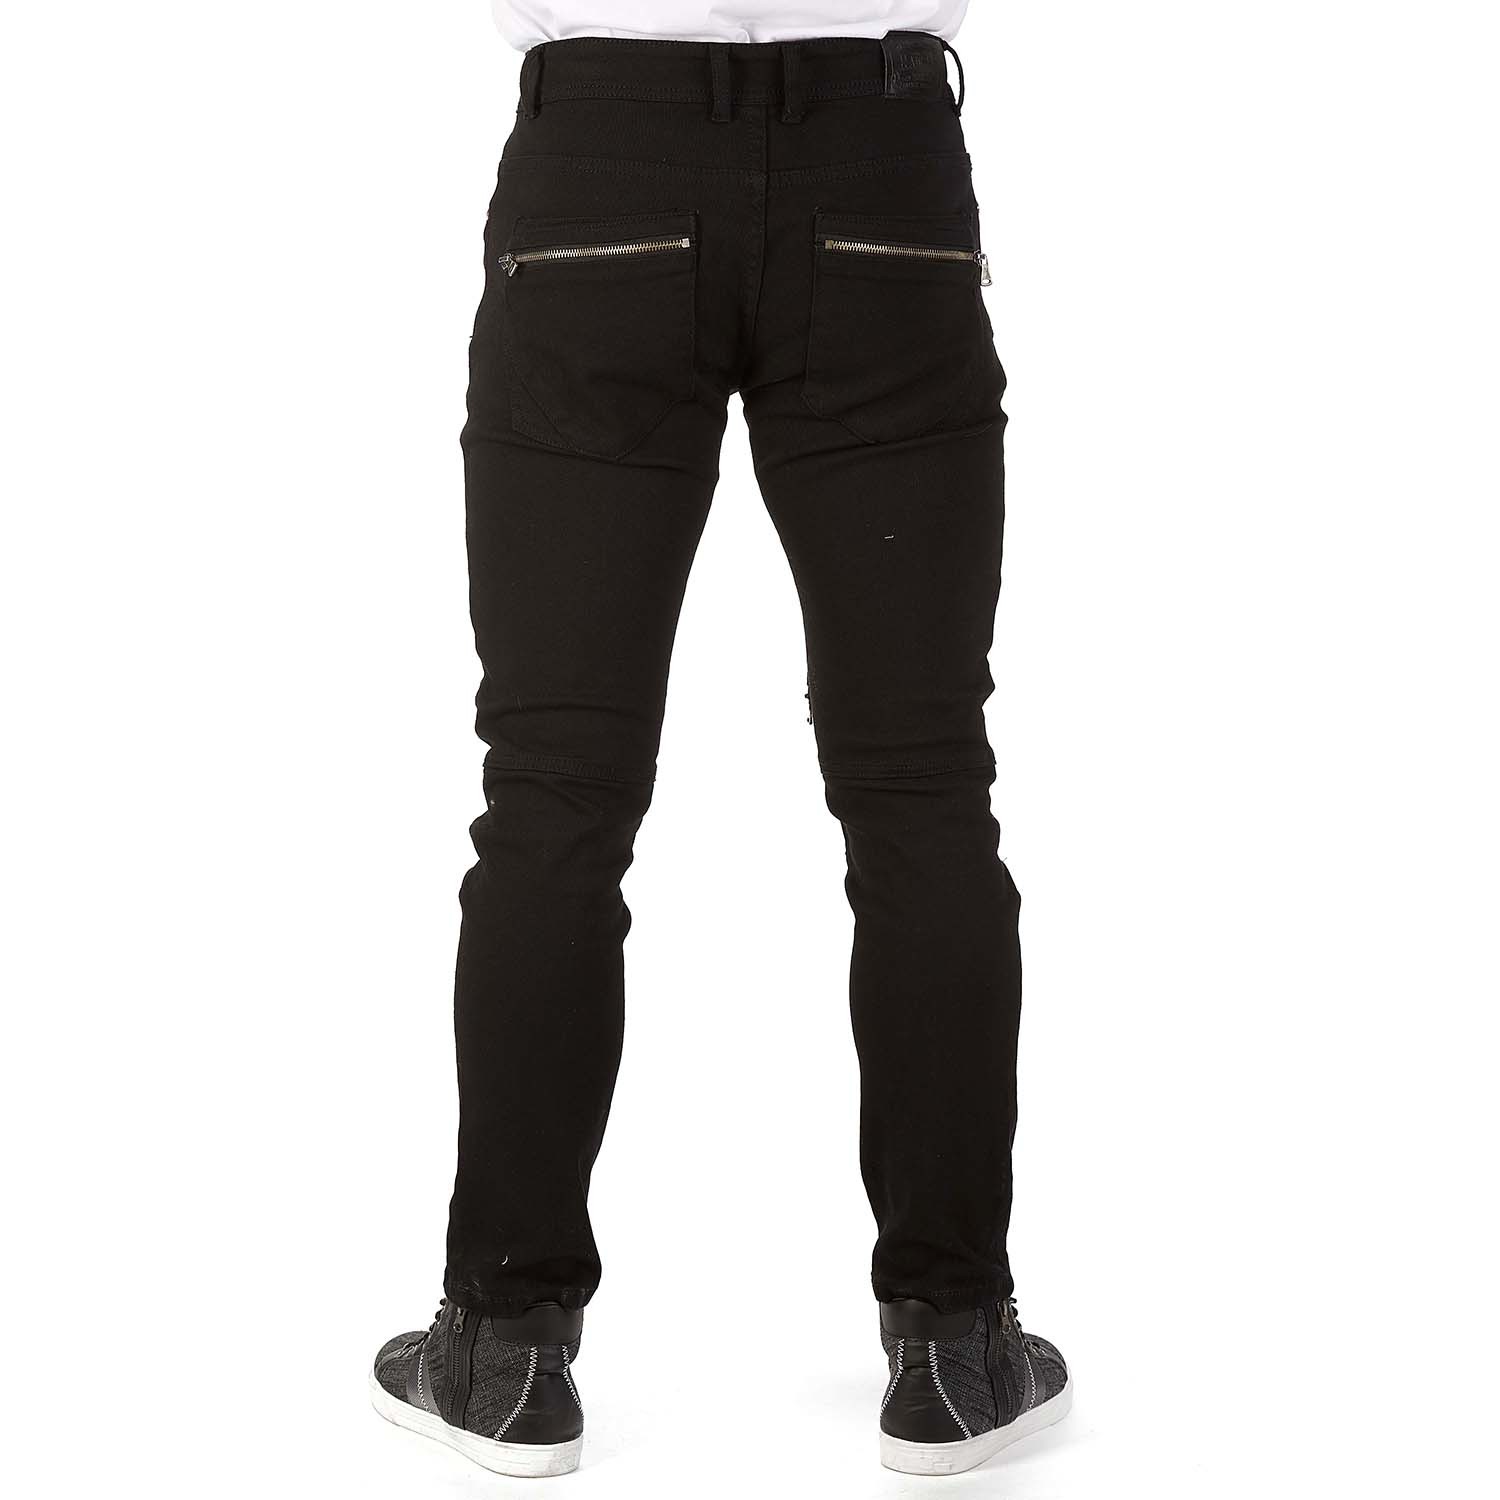 Black Zipper Back Pocket Jean // Black (30WX30L) - Xray Jeans - Touch ...